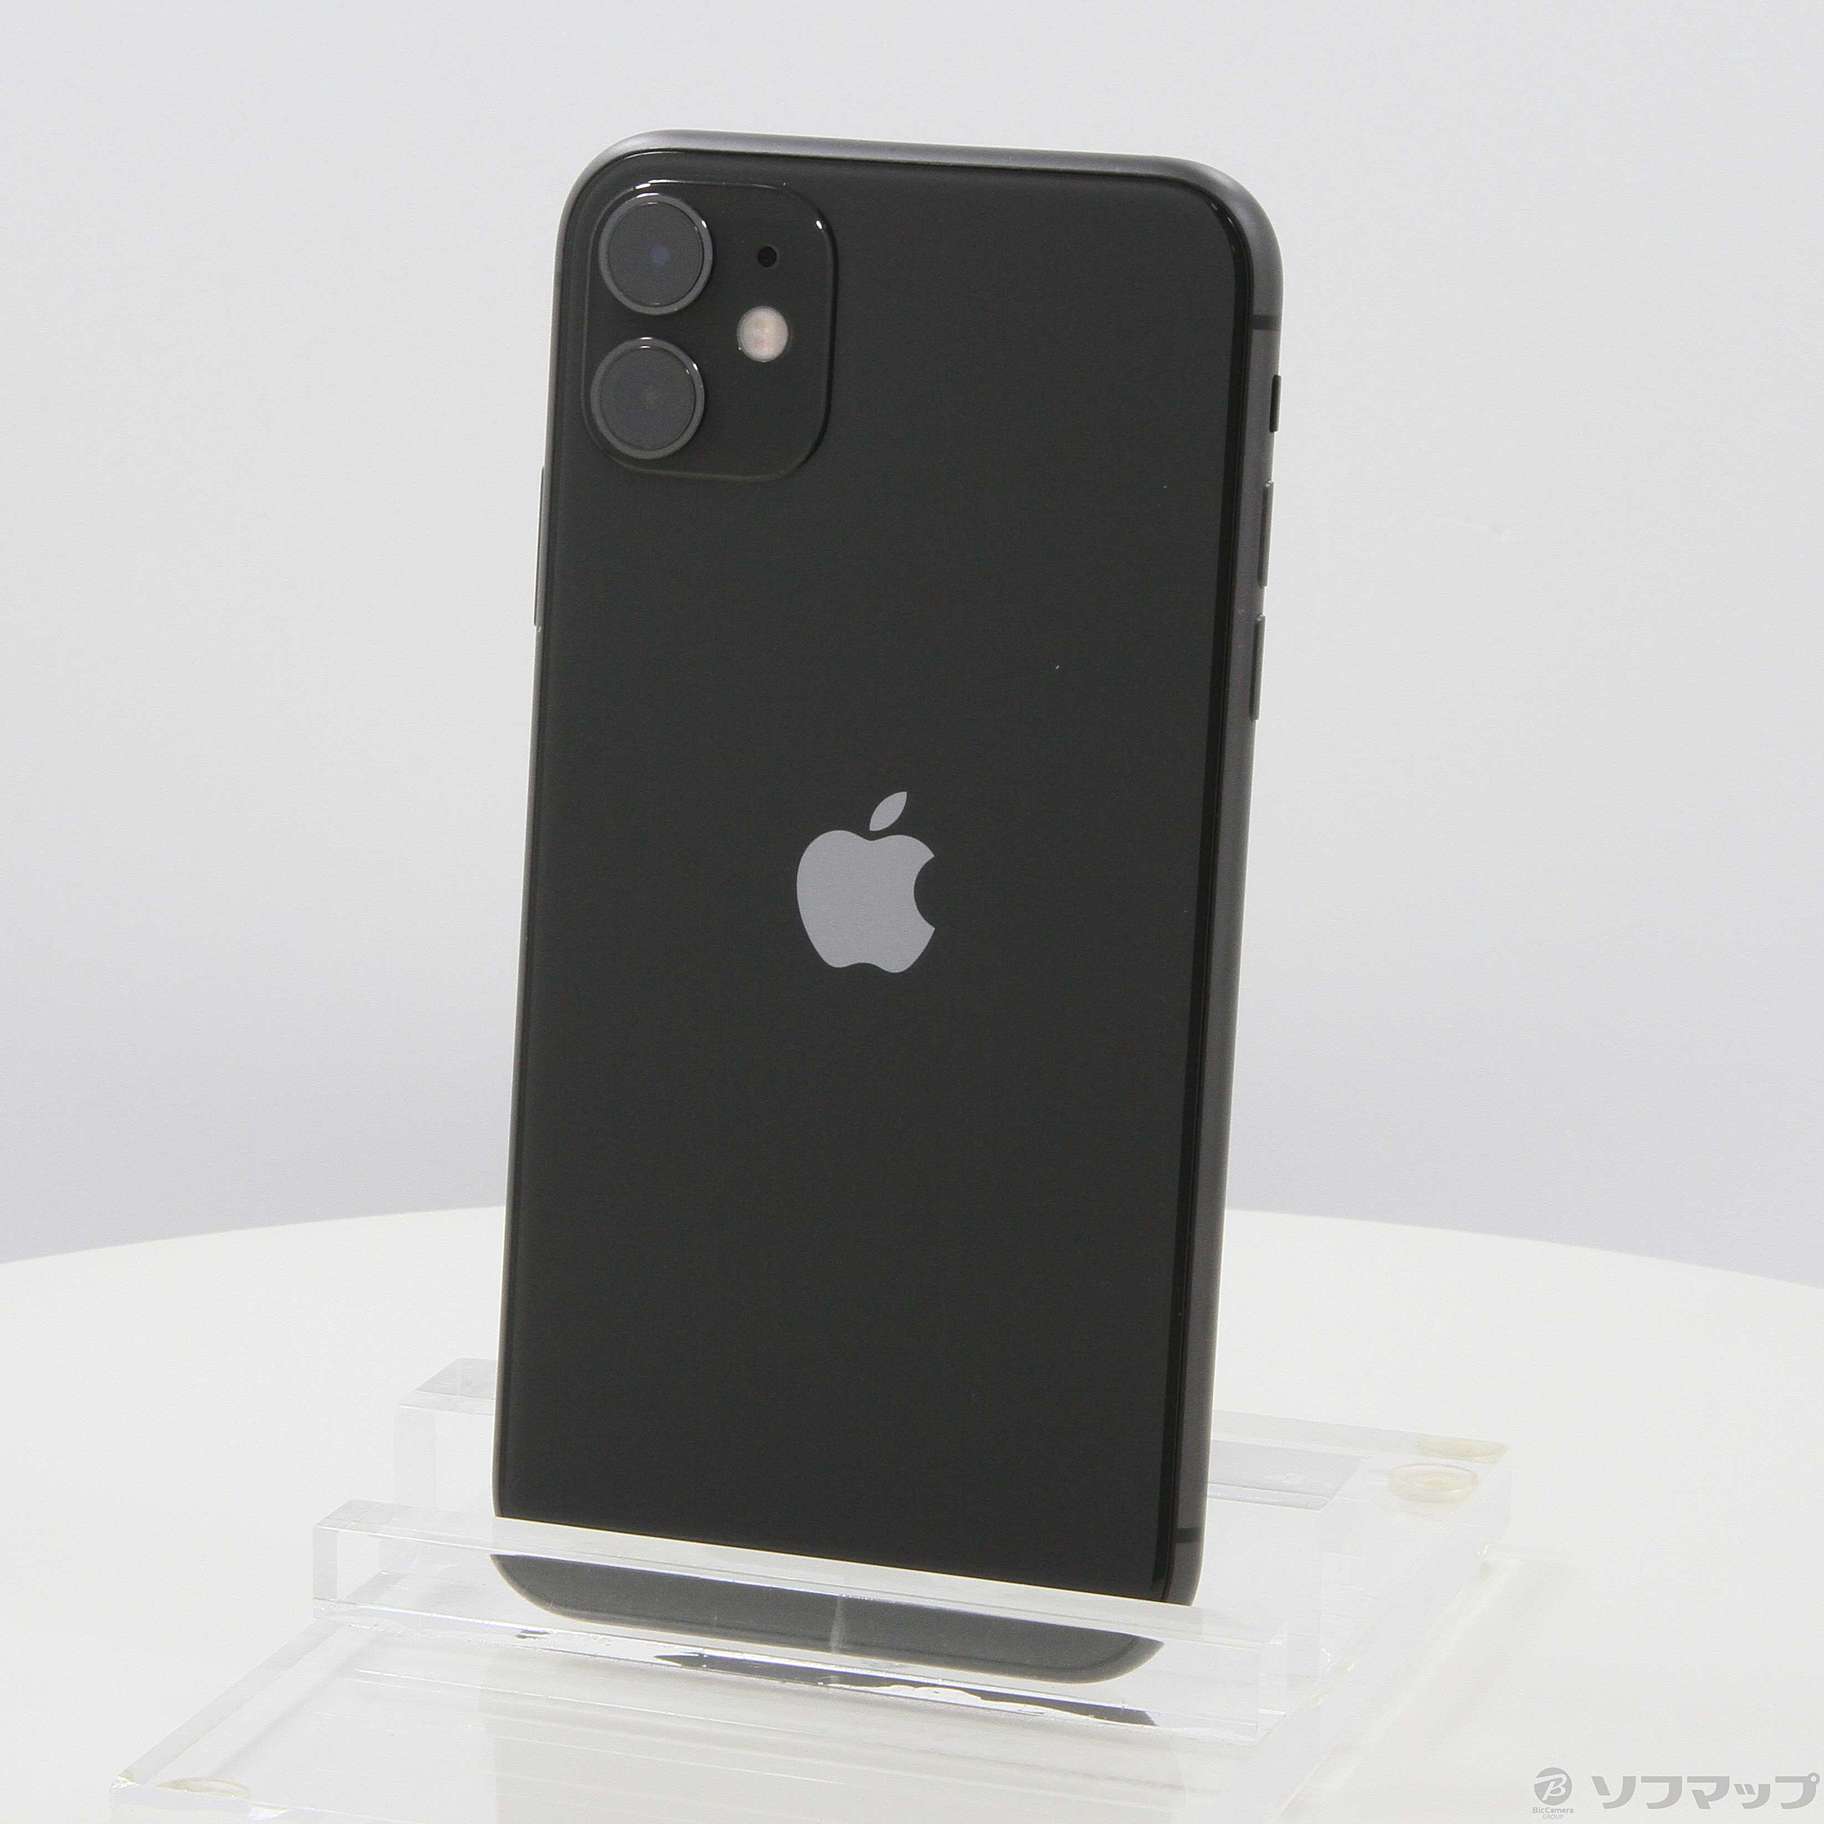 Apple iPhone11 SIMフリー 64GB ブラック - スマートフォン本体